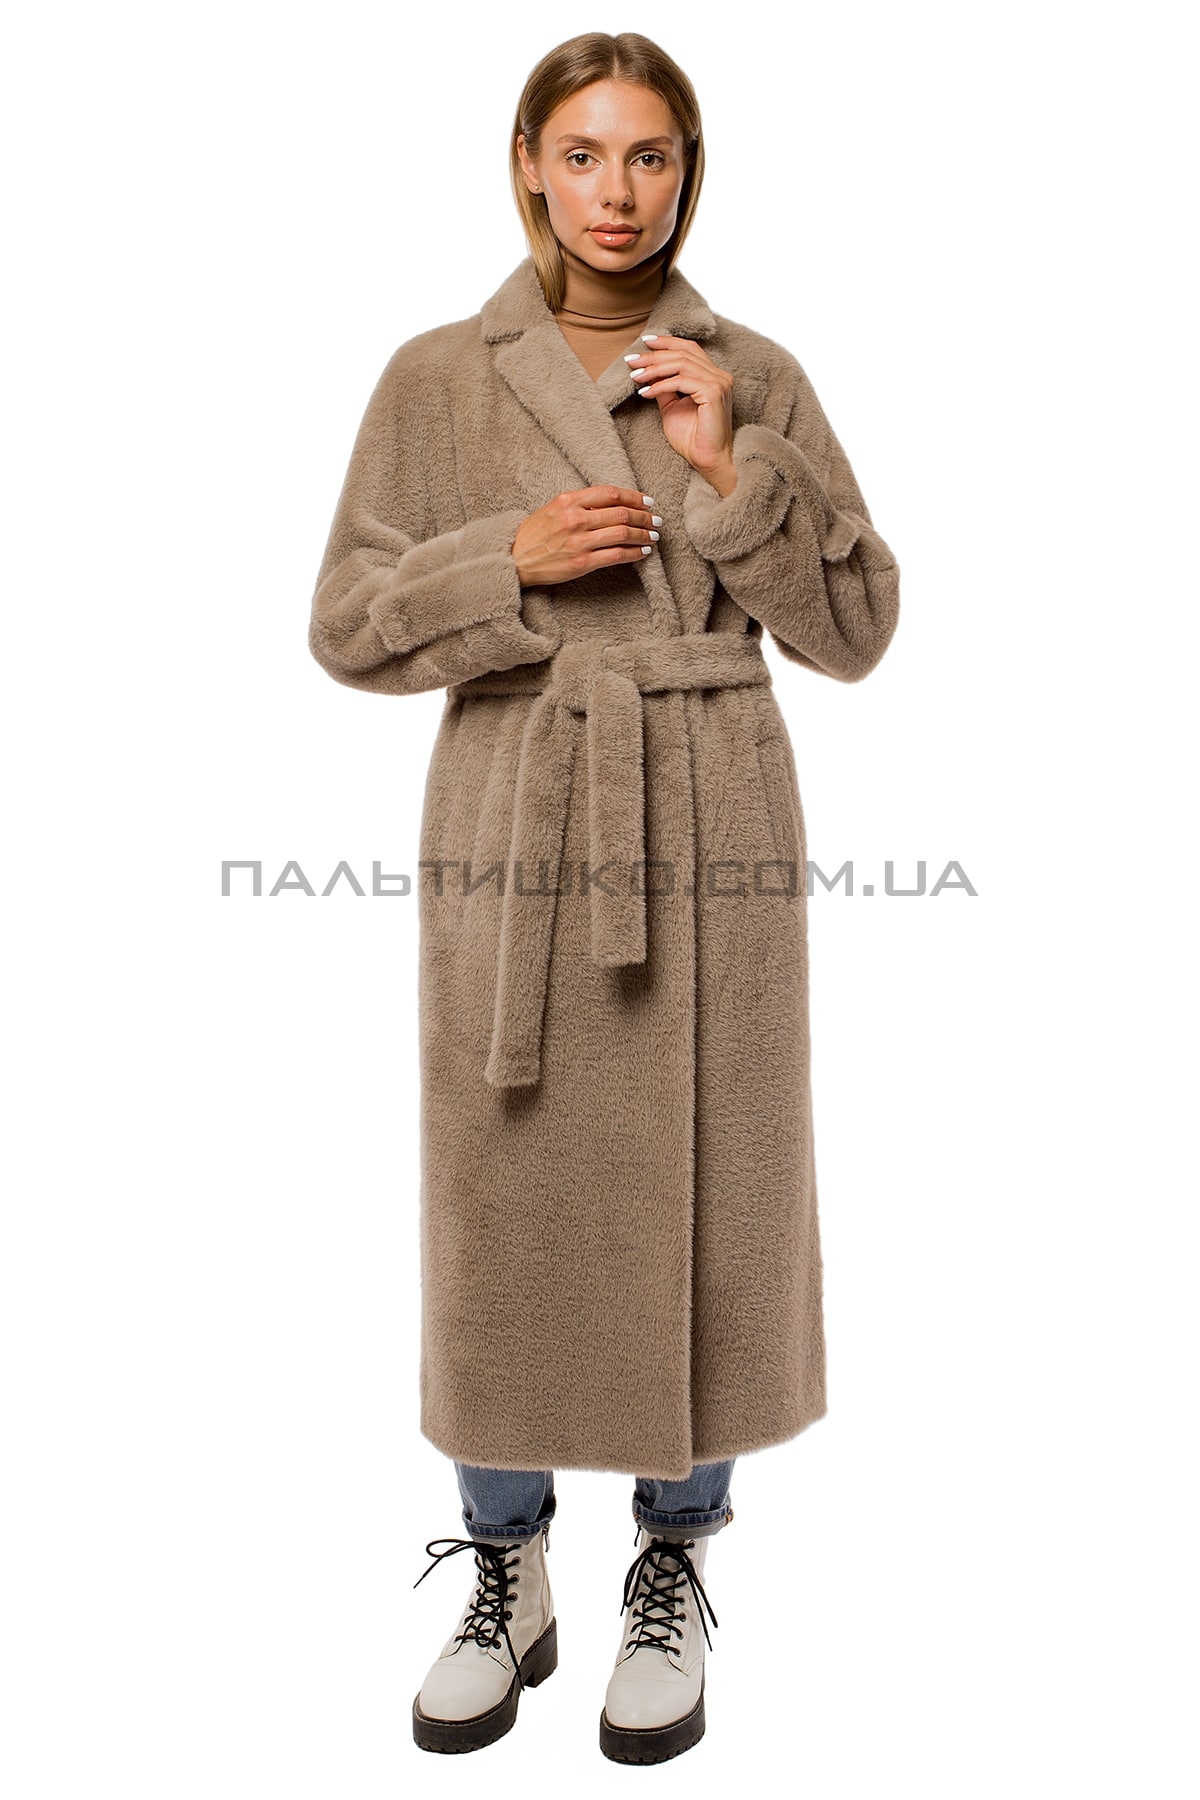  Женское пальто-шуба mokko